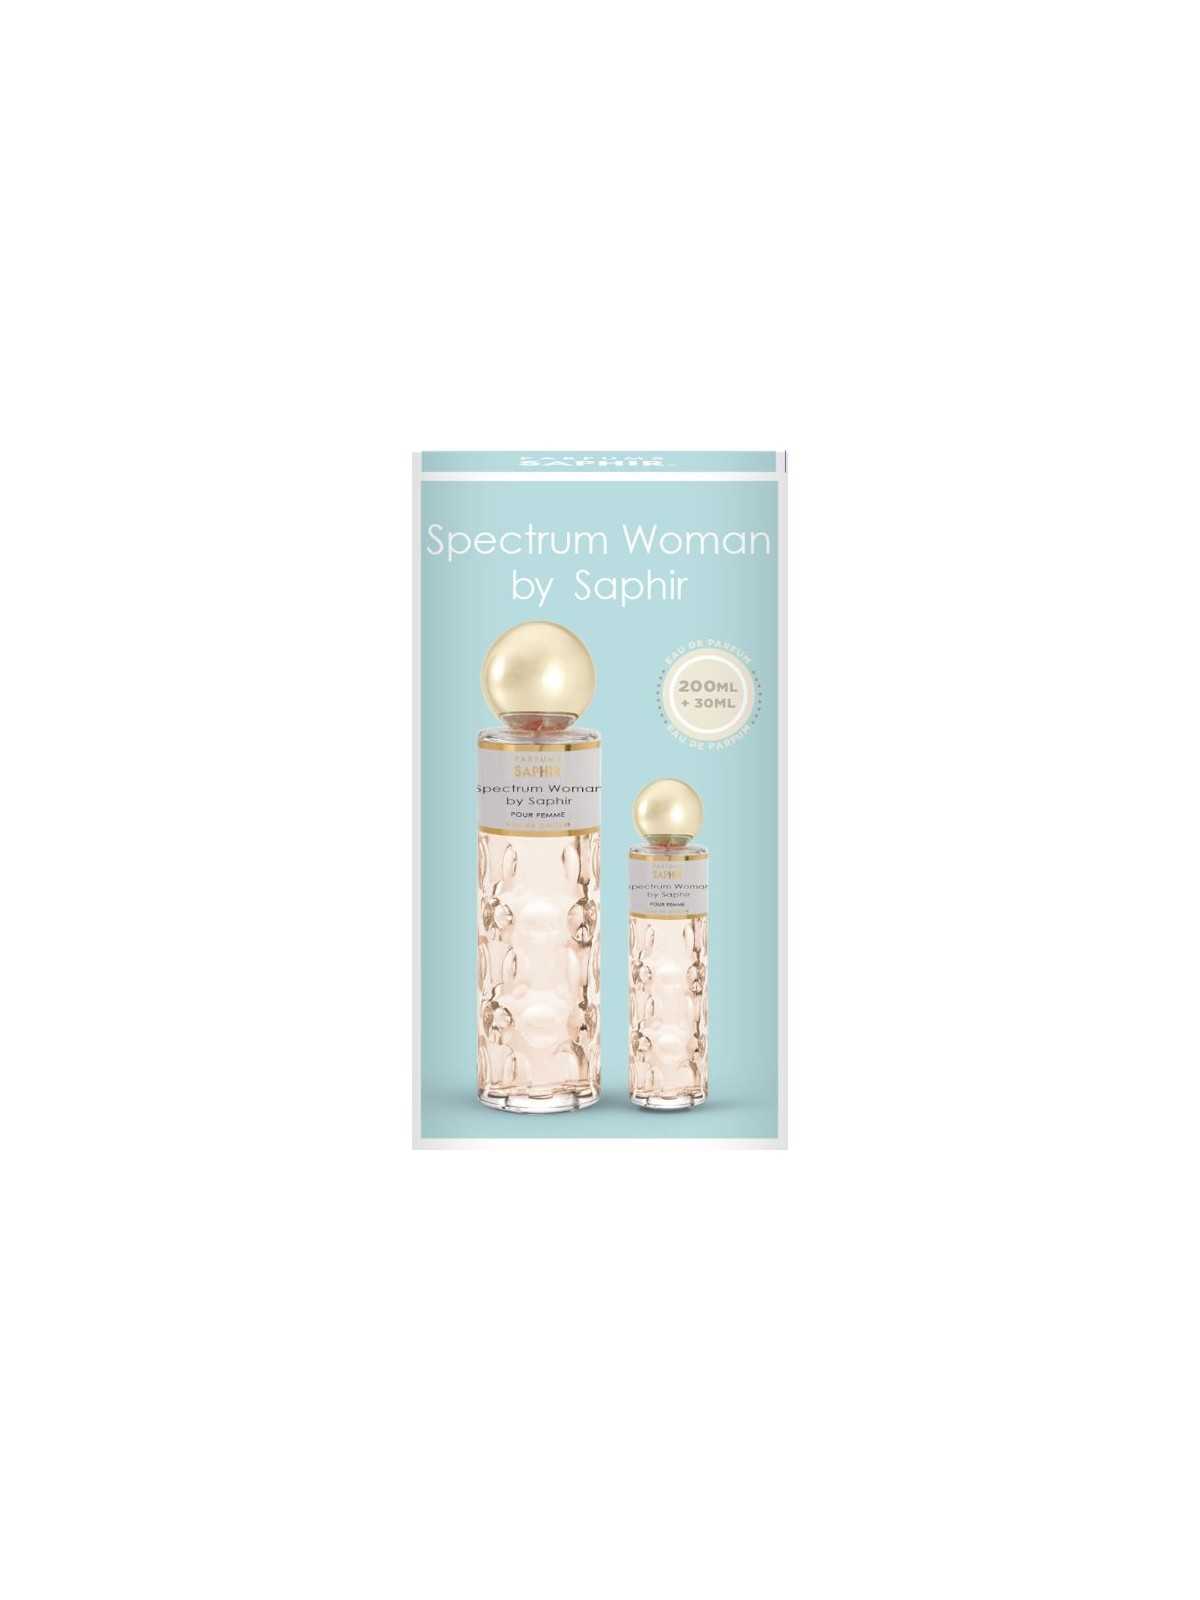 Regala Saphir set de perfume Spectrum Woman 200ml + vapo 30ml con nuestra selección de Inicio por tan sólo 13,95 € o precio específico 13,95 € en Thalie Care